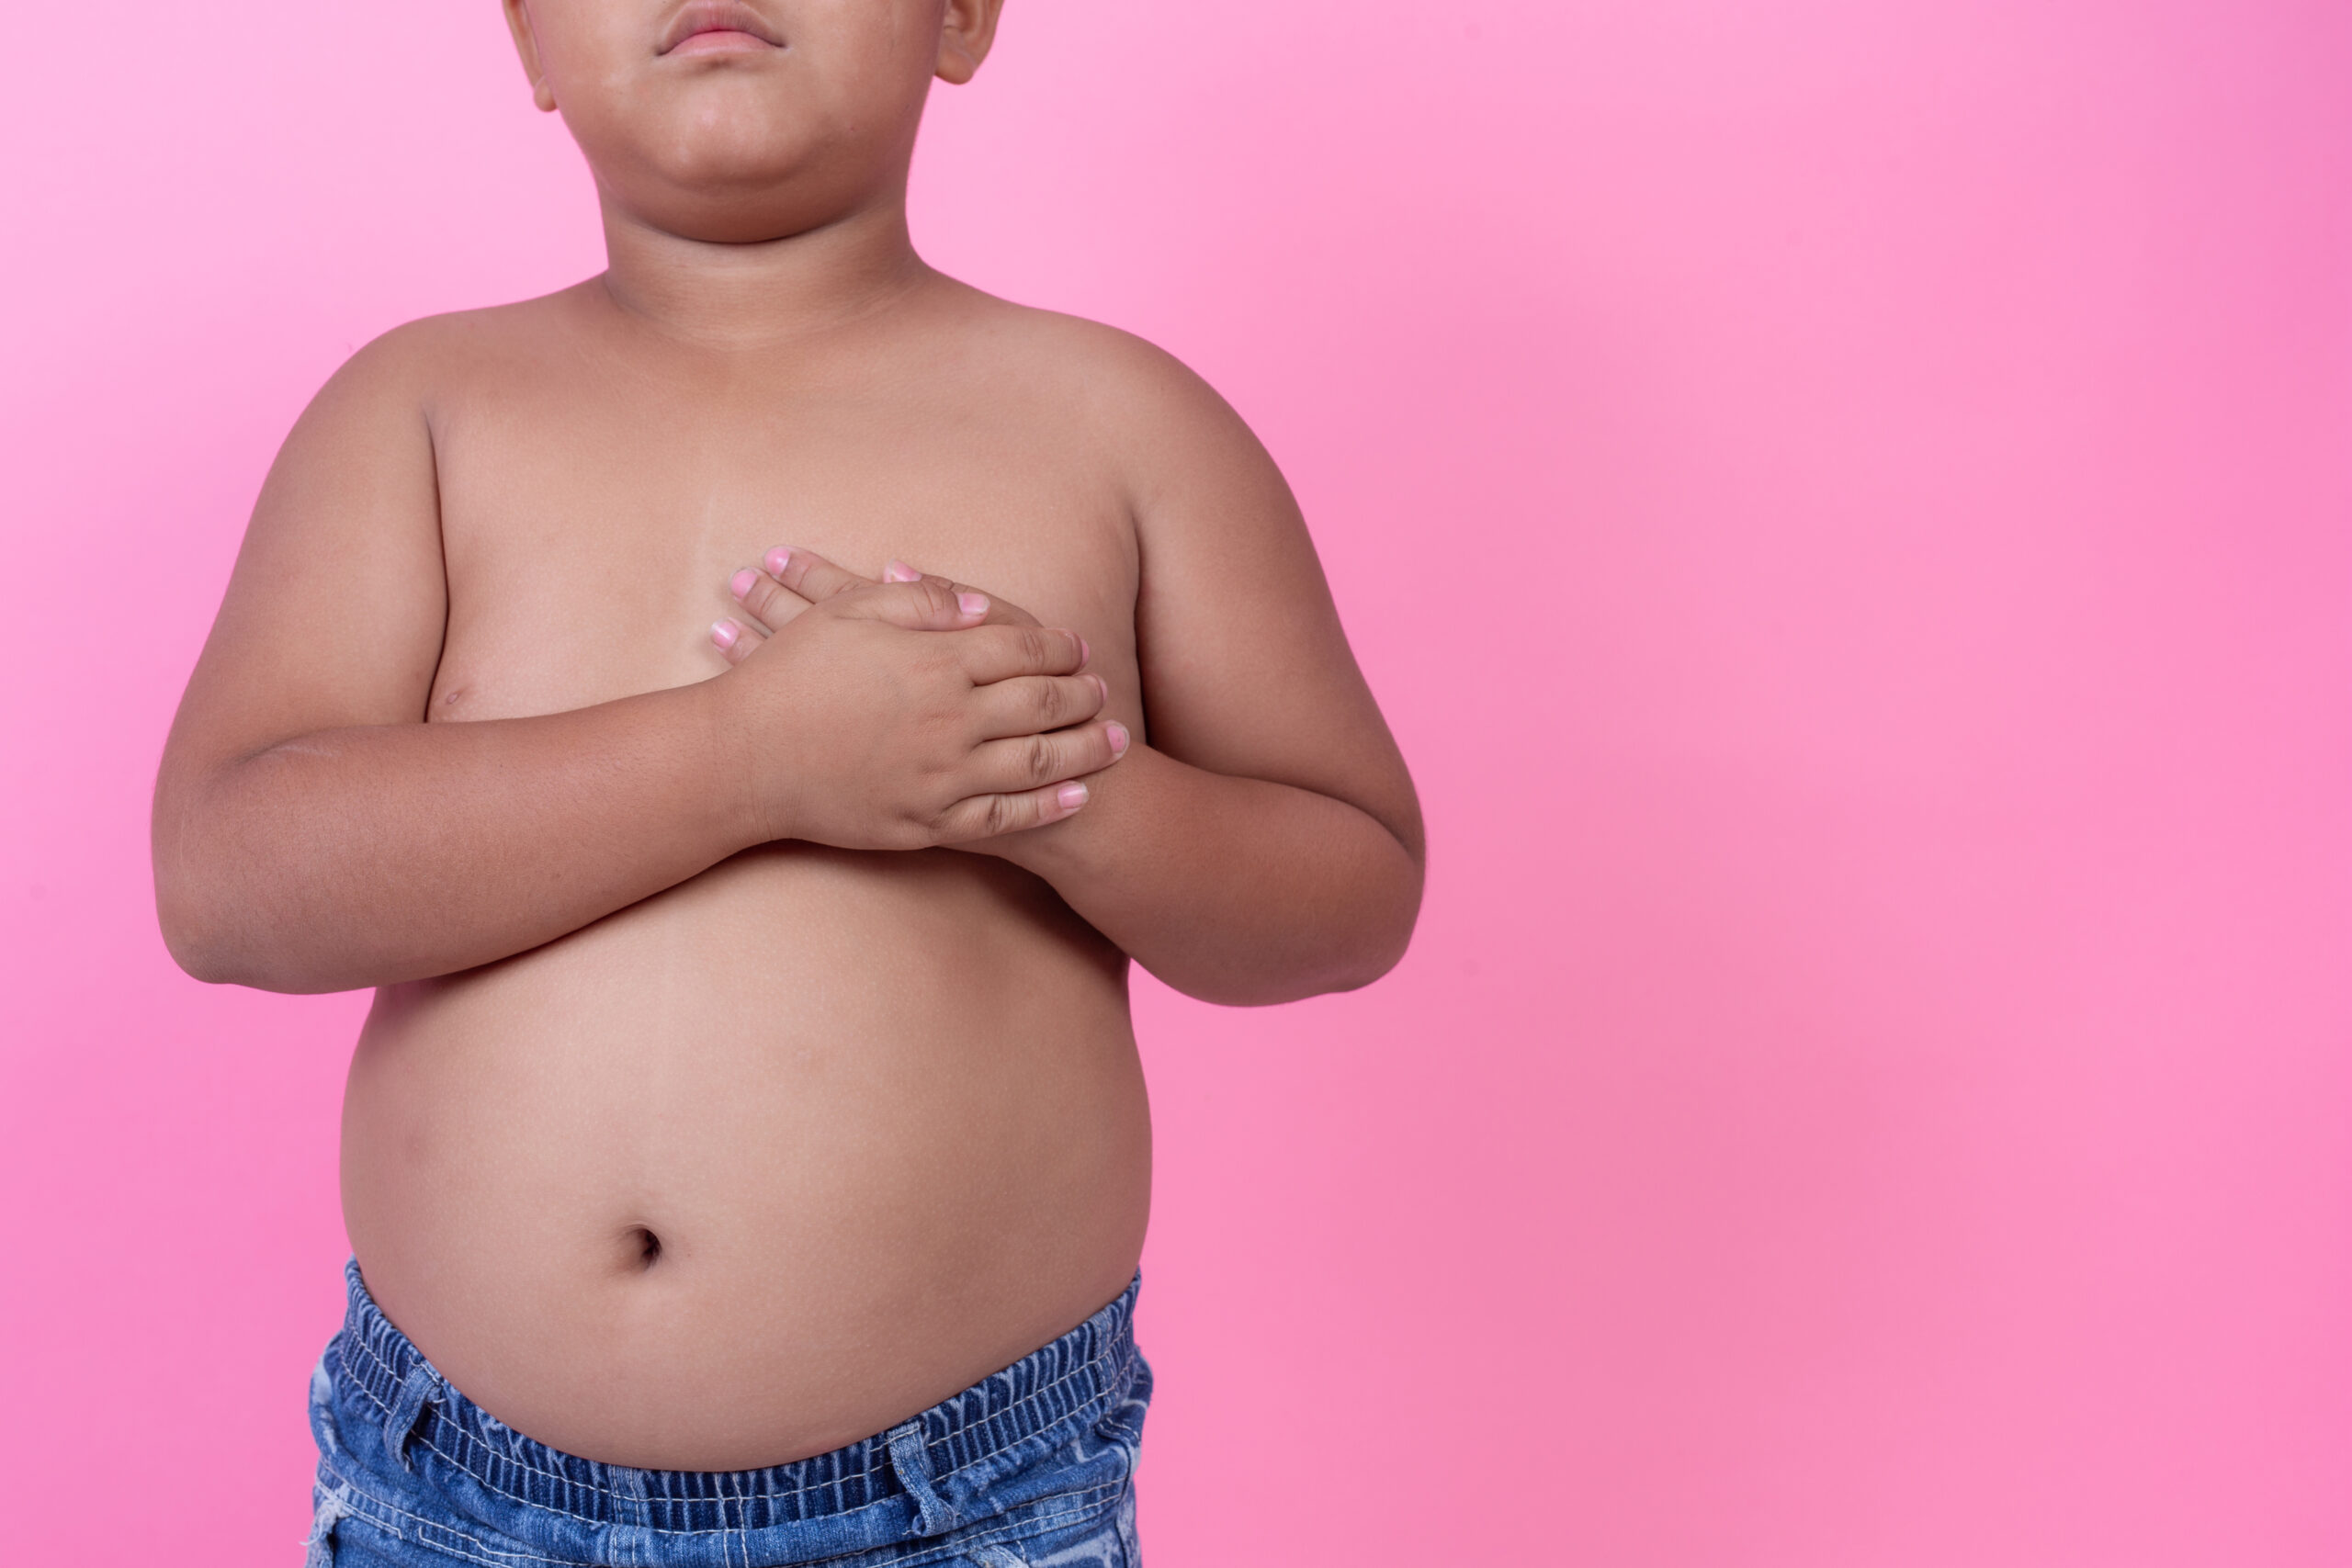 Πως μπορεί να αντιμετωπιστεί η αυξανόμενη παιδική και εφηβική παχυσαρκία